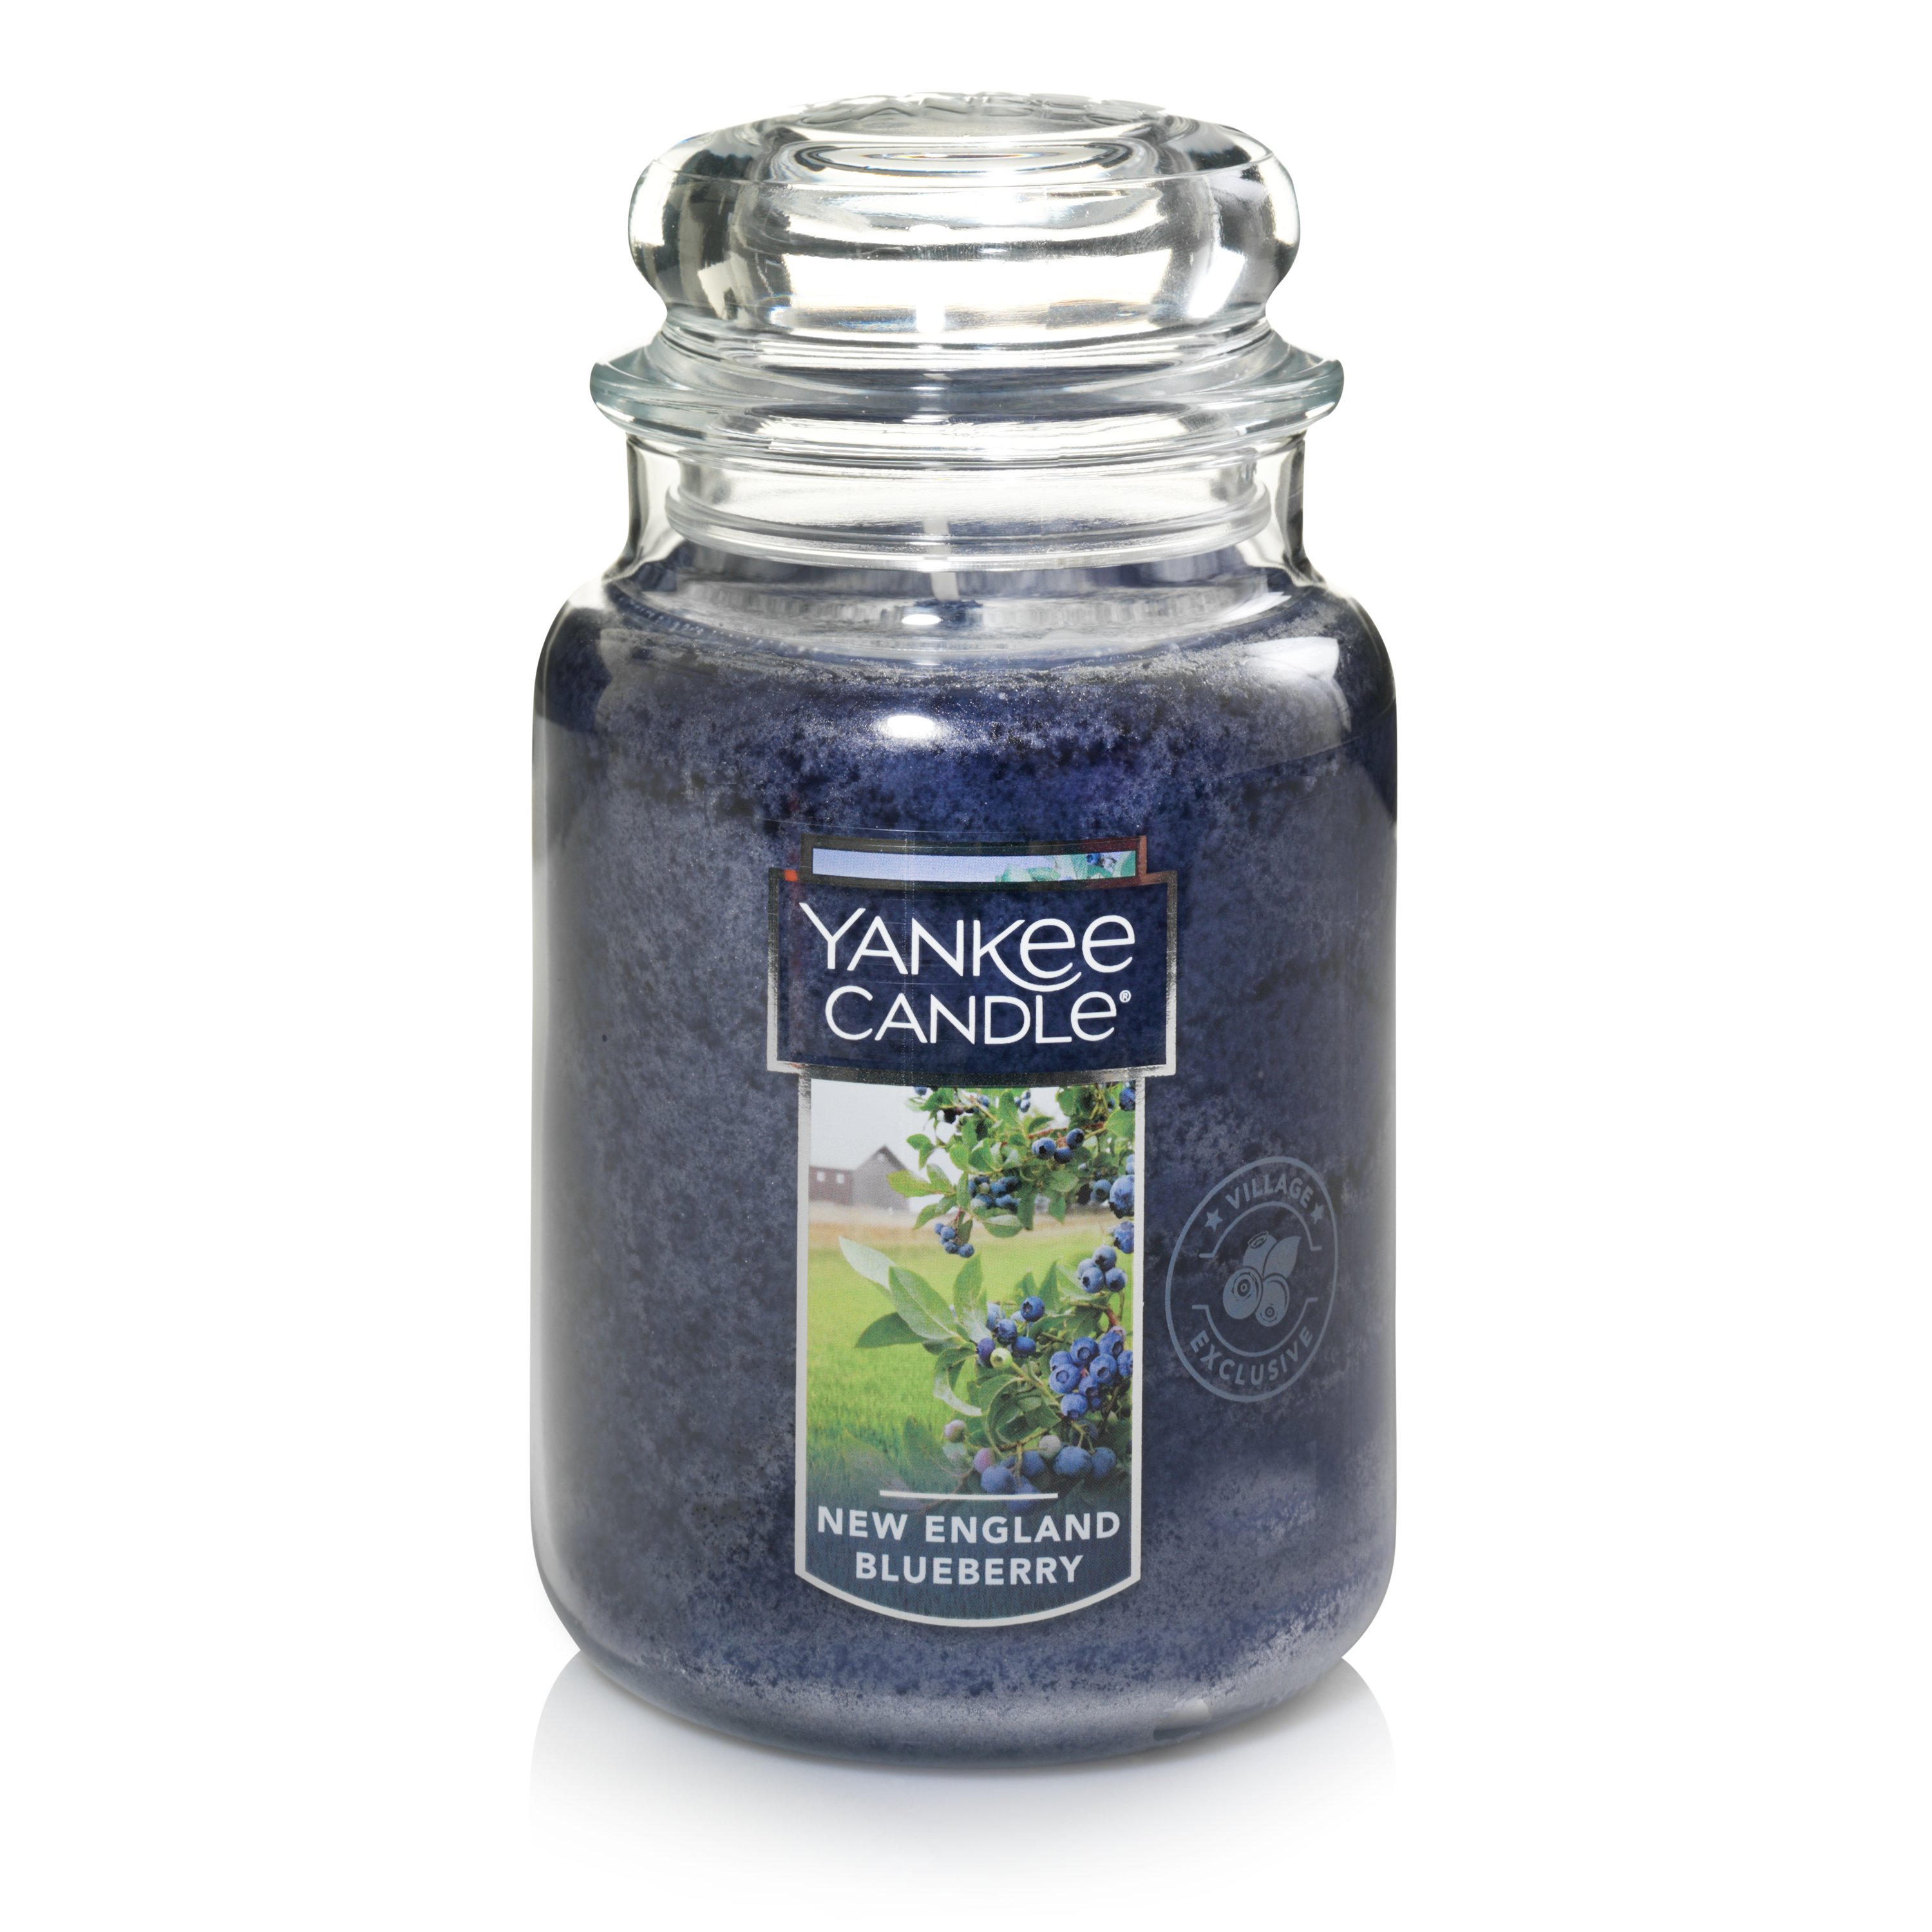 Yankee Candle New England Blueberry Large Jar Candle